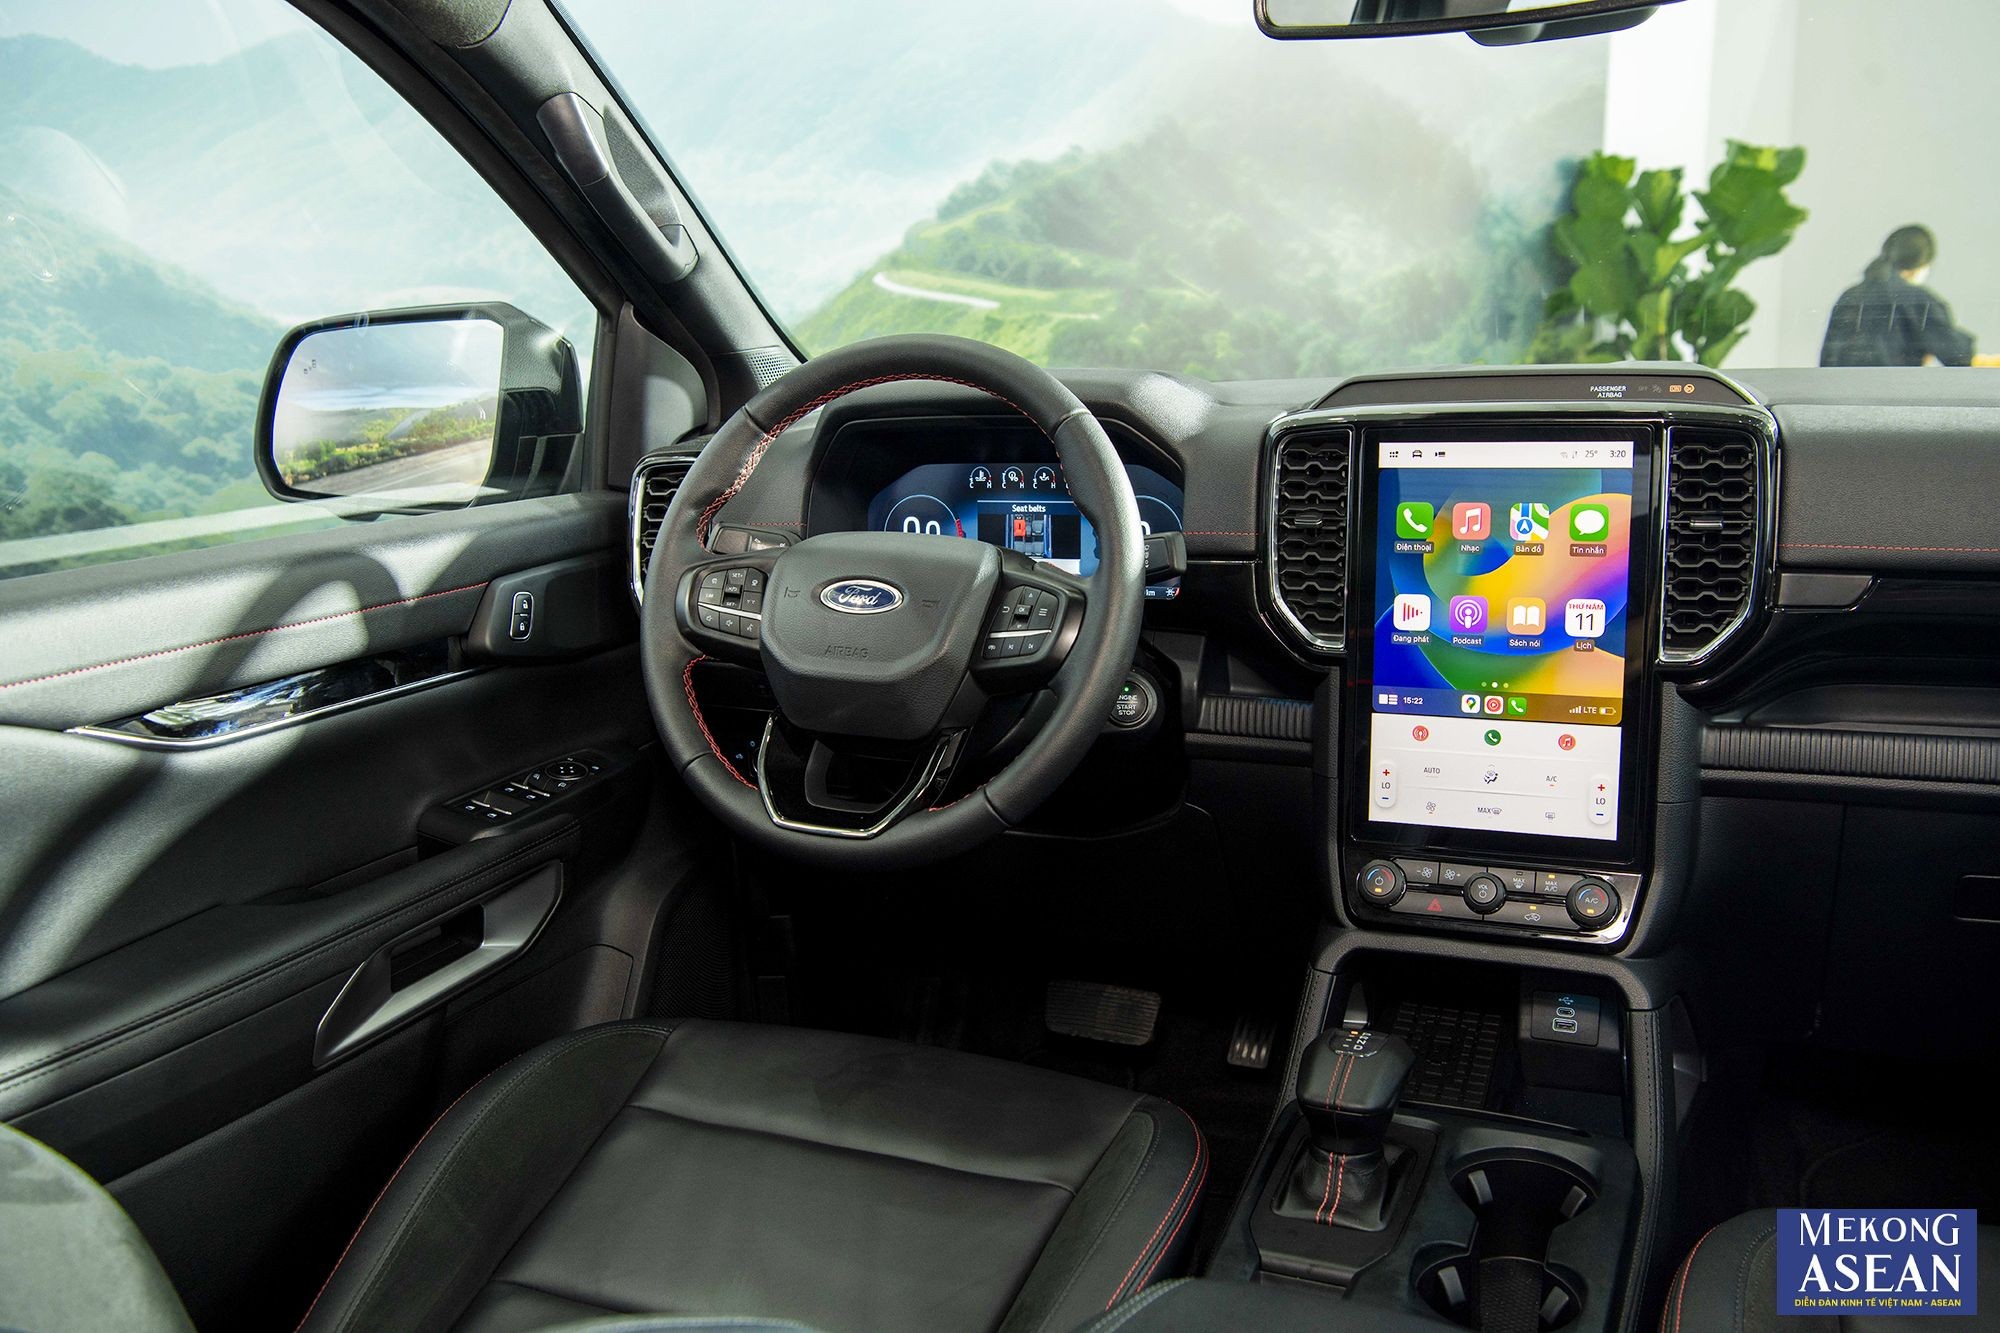 Ford Ranger Stormtrak ngập tr&agrave;n c&ocirc;ng nghệ kết nối th&ocirc;ng minh như hệ thống SYNC 4A điều khiển bằng giọng n&oacute;i, kết nối Apple CarPlay v&agrave; Android Auto kh&ocirc;ng d&acirc;y, ứng dụng FordPass, hệ thống &acirc;m thanh 6 loa, t&iacute;nh năng sạc kh&ocirc;ng d&acirc;y c&ugrave;ng nhiều cổng USB, sạc 12V v&agrave; ổ cắm điện 230V (400W).